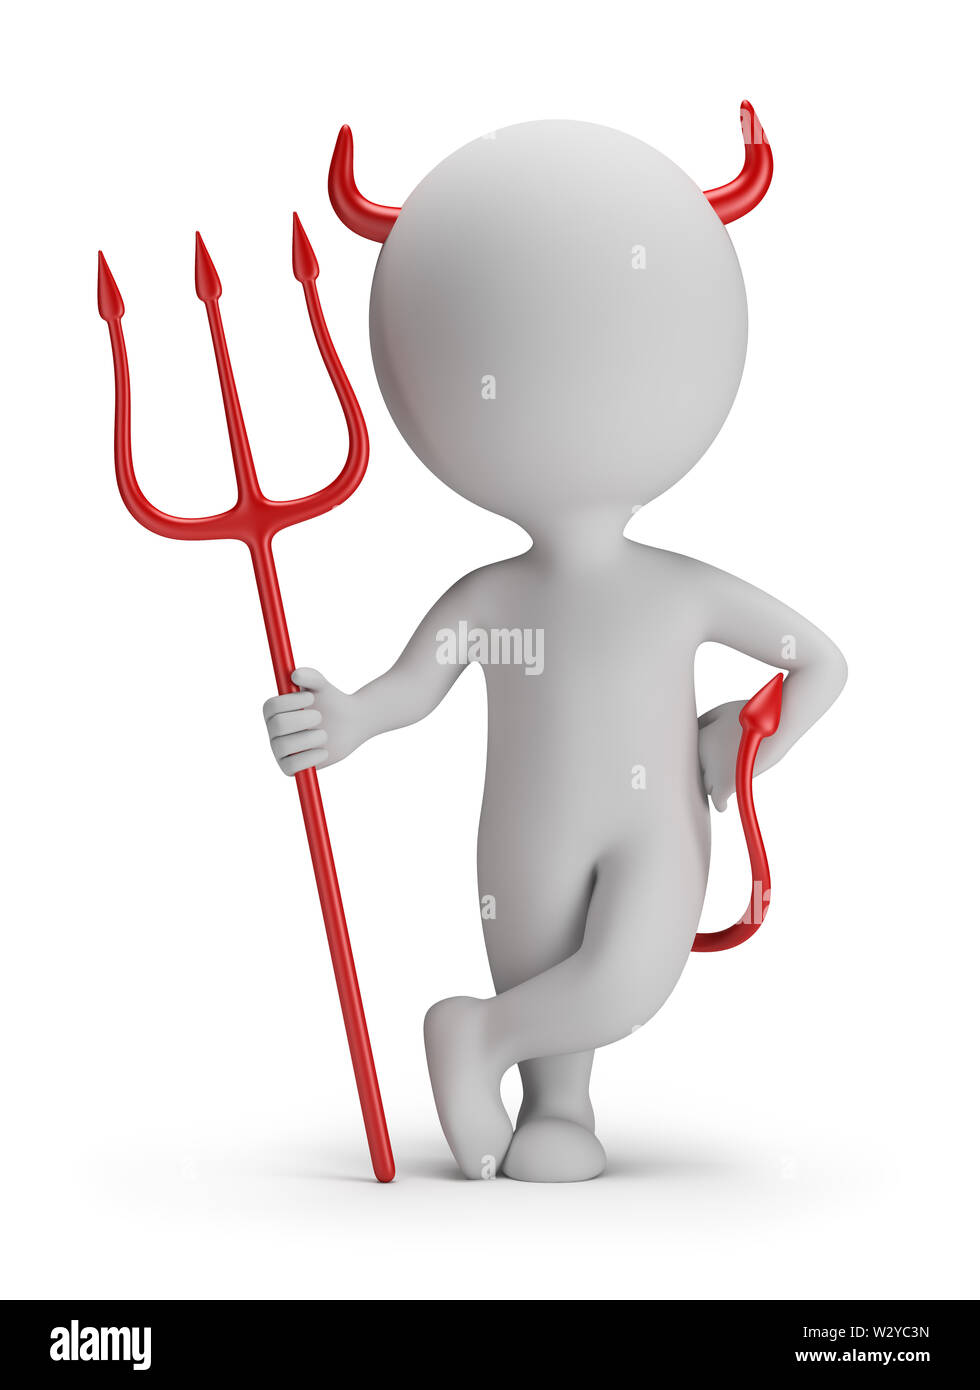 Petite personne 3d - devil avec un trident. Image 3d. Arrière-plan blanc. Banque D'Images